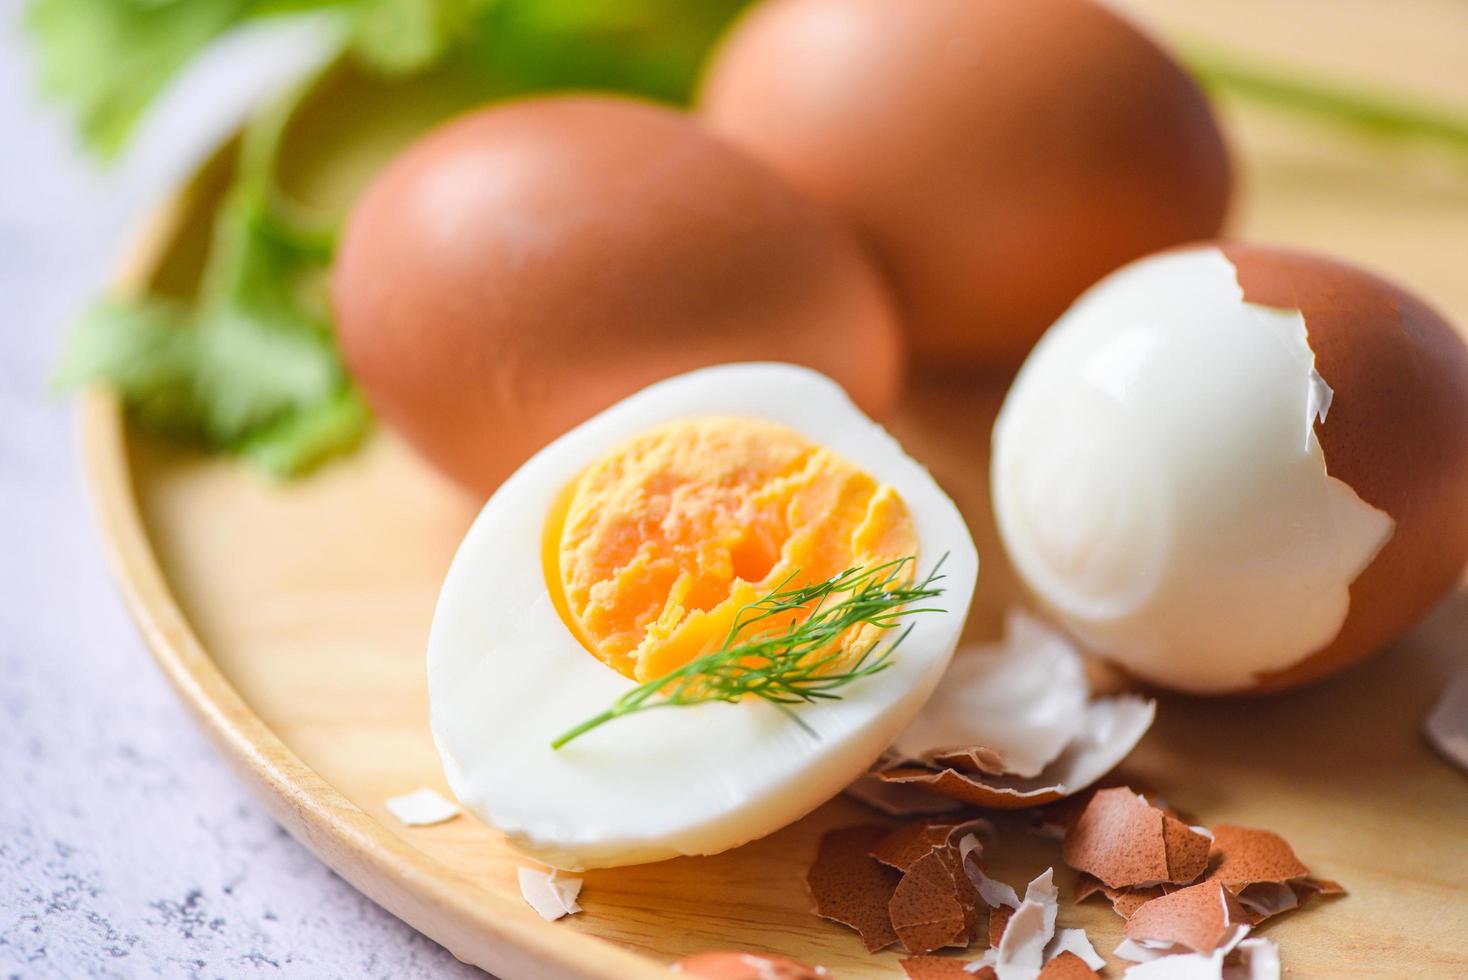 ägg frukost, färska skalade ägg meny mat kokta ägg i en träplatta dekorerad med löv grön dill och äggskal, halverade äggulor för matlagning hälsosam mat foto